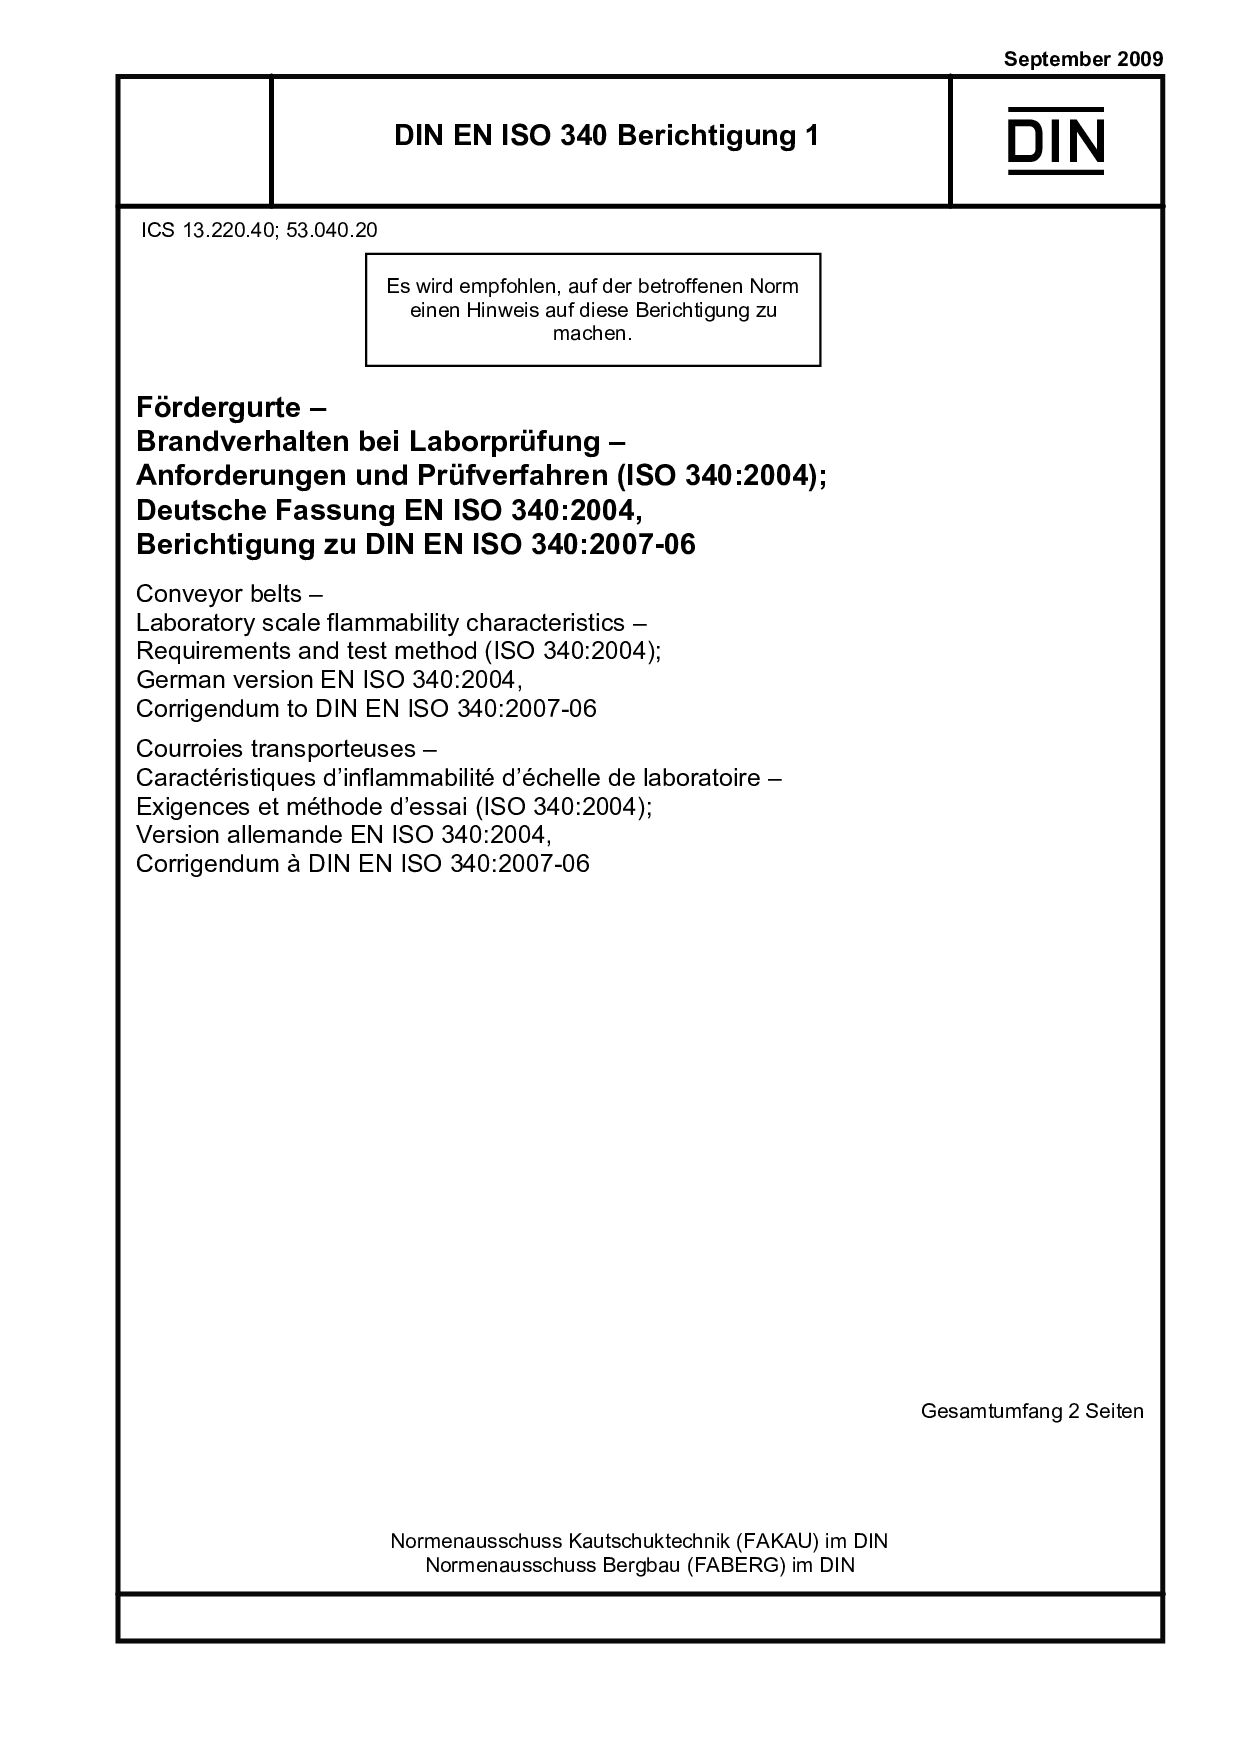 DIN EN ISO 340 Berichtigung 1:2009封面图